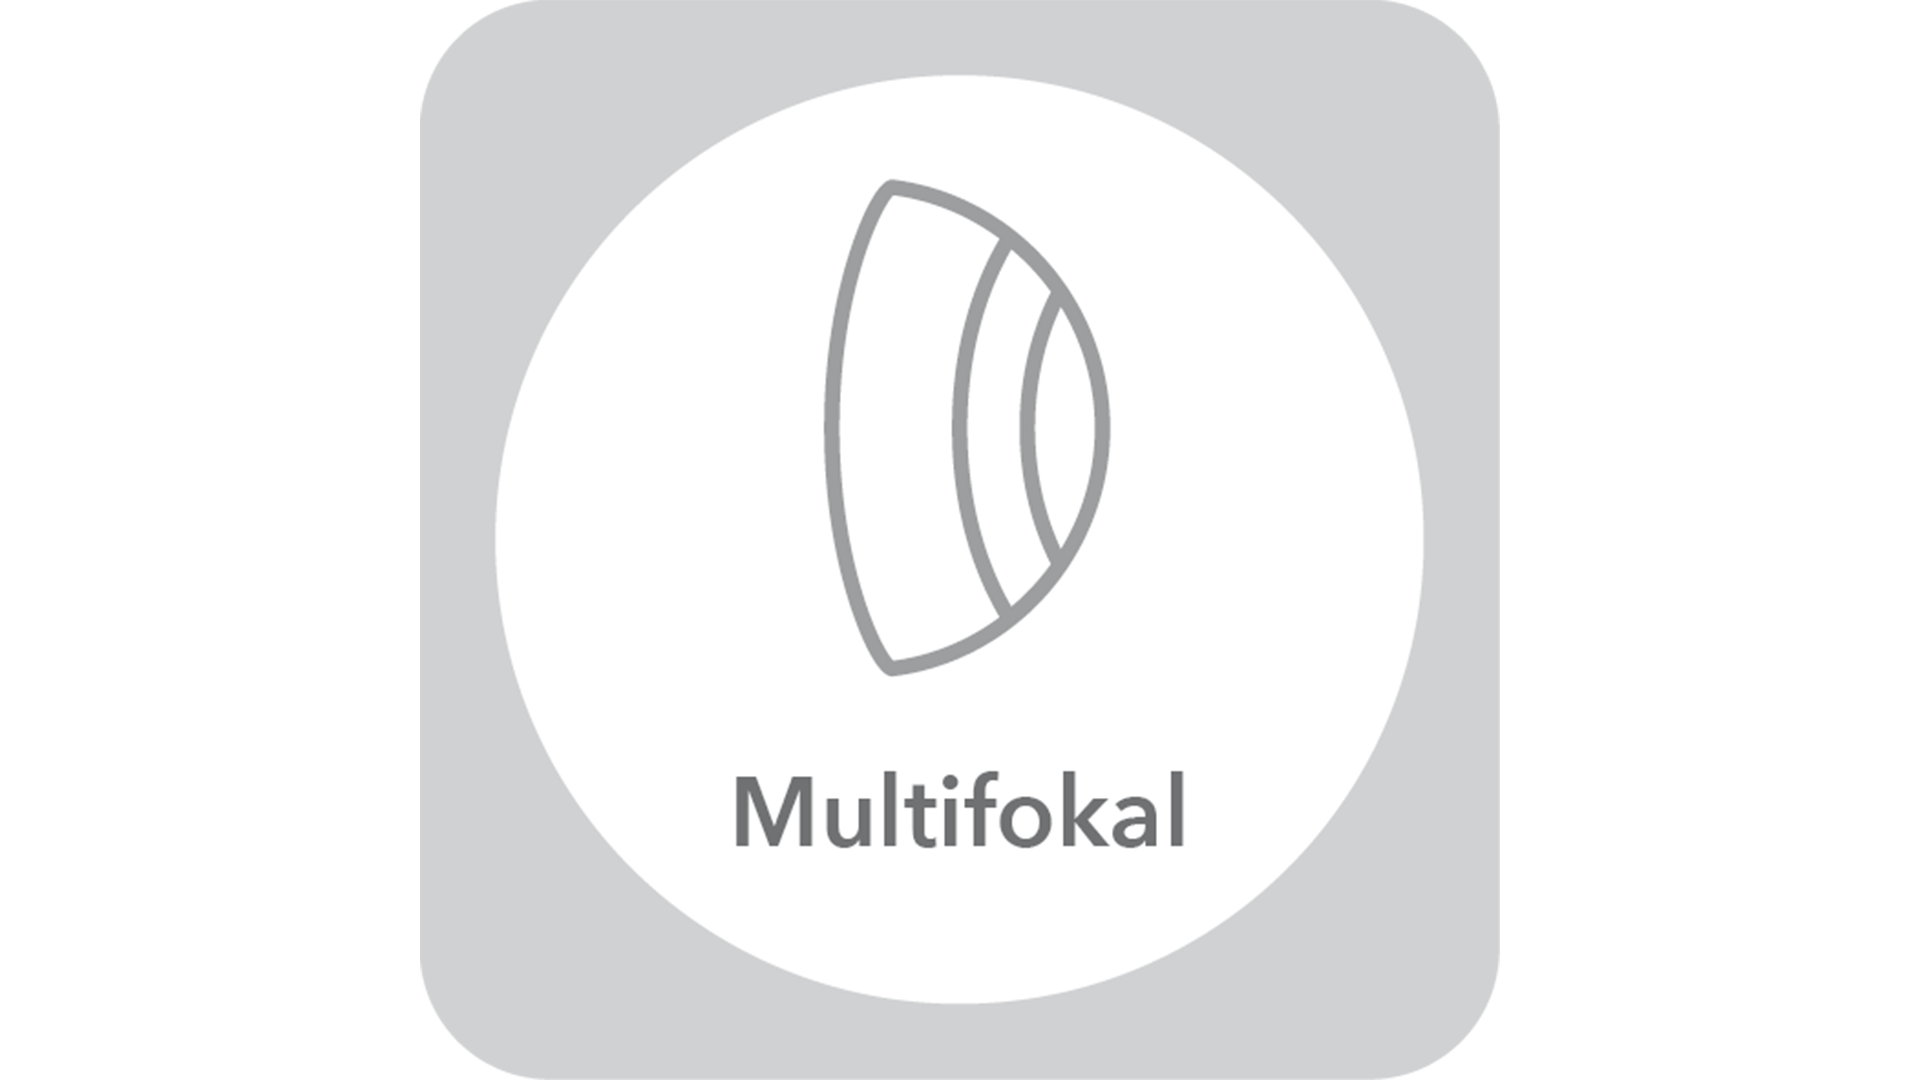 Menicon Multifokal Logo